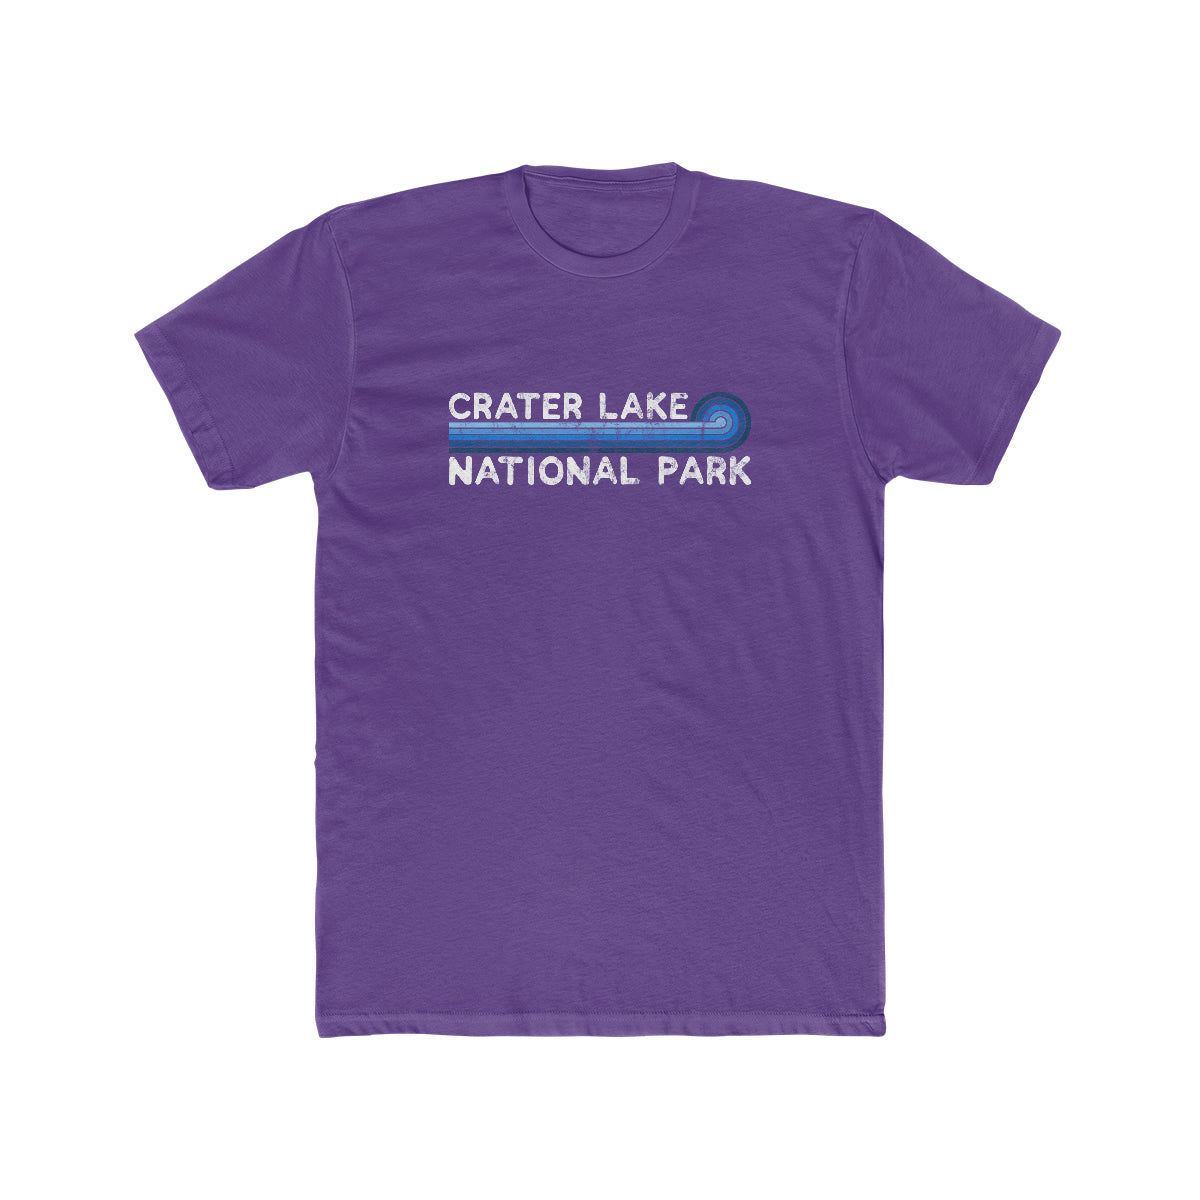 Crater Lake National Park T-Shirt - Blue Vintage Stretched Sunrise